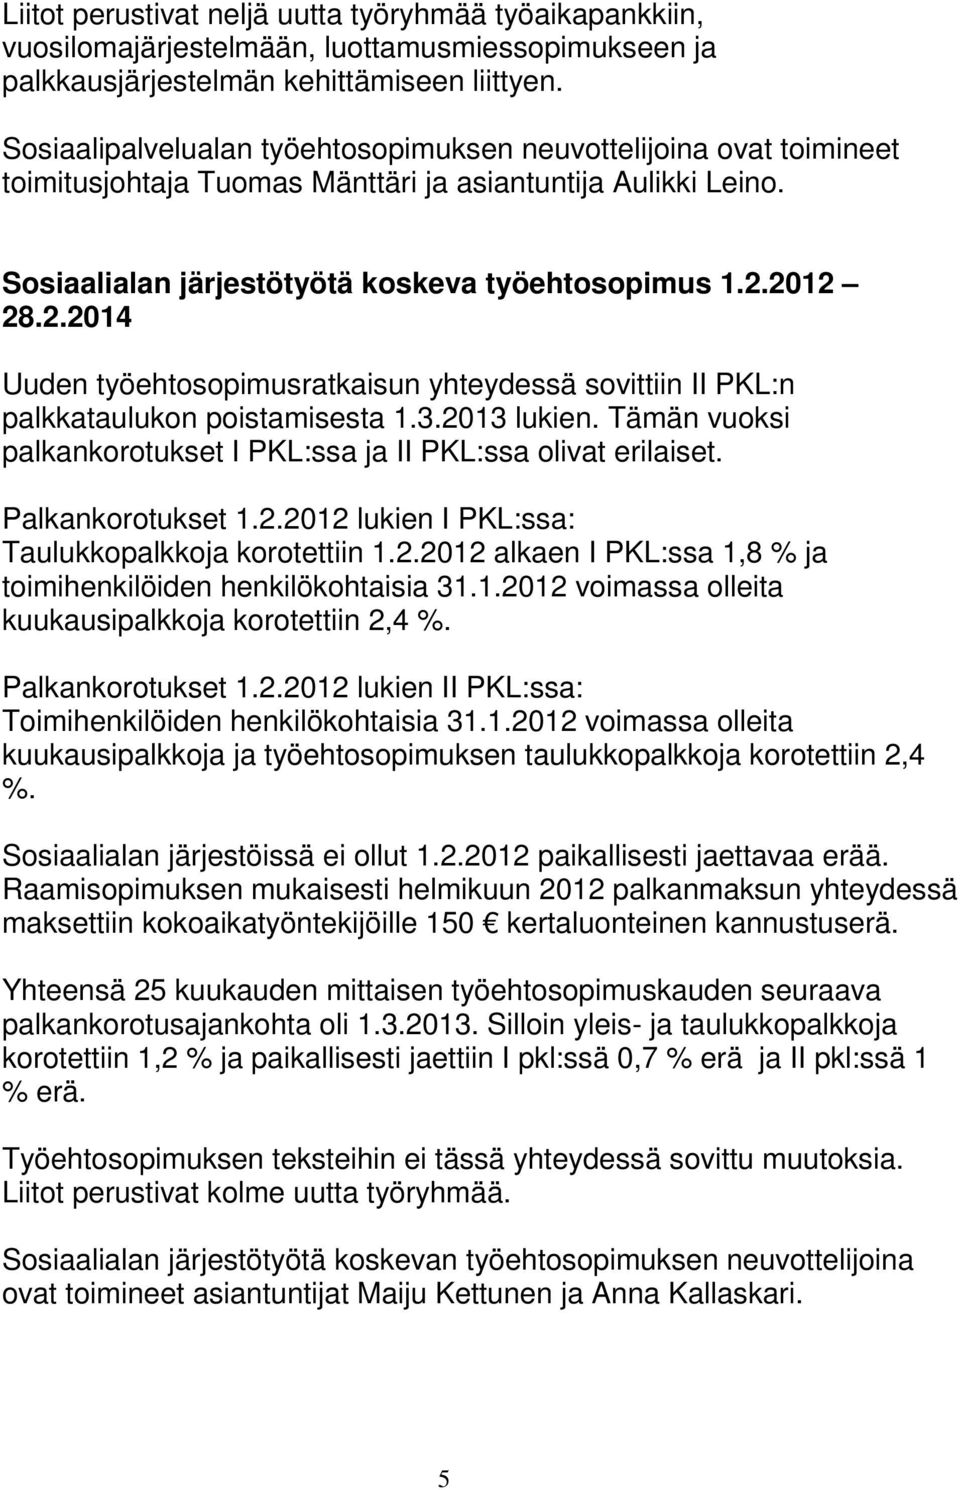 2012 28.2.2014 Uuden työehtosopimusratkaisun yhteydessä sovittiin II PKL:n palkkataulukon poistamisesta 1.3.2013 lukien. Tämän vuoksi palkankorotukset I PKL:ssa ja II PKL:ssa olivat erilaiset.